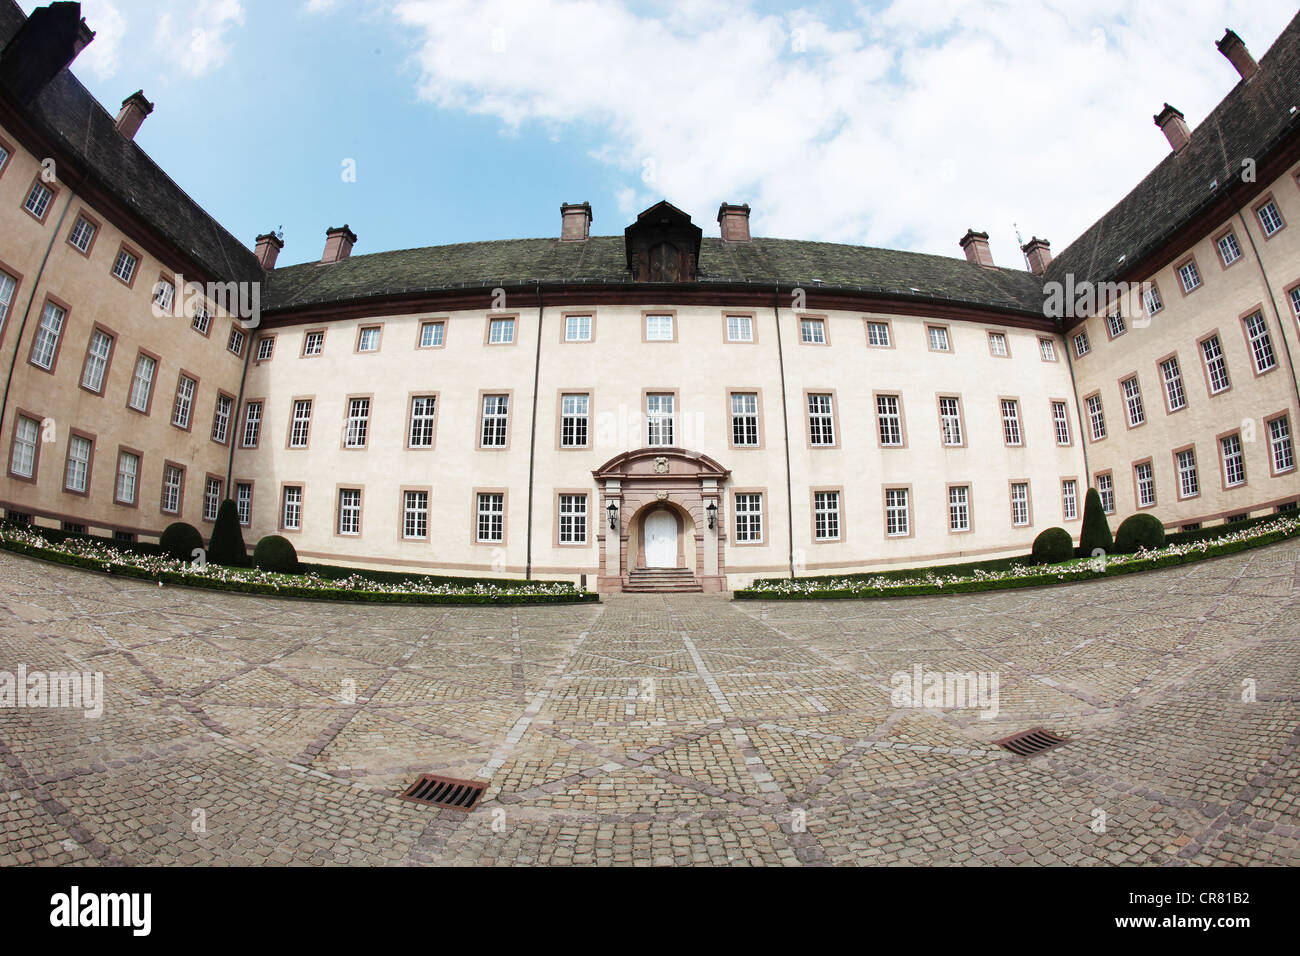 Cour intérieure, le château Schloss Corvey, ancienne abbaye, Hoexter, Suède, la région Rhénanie du Nord-Westphalie, Allemagne, Europe Banque D'Images